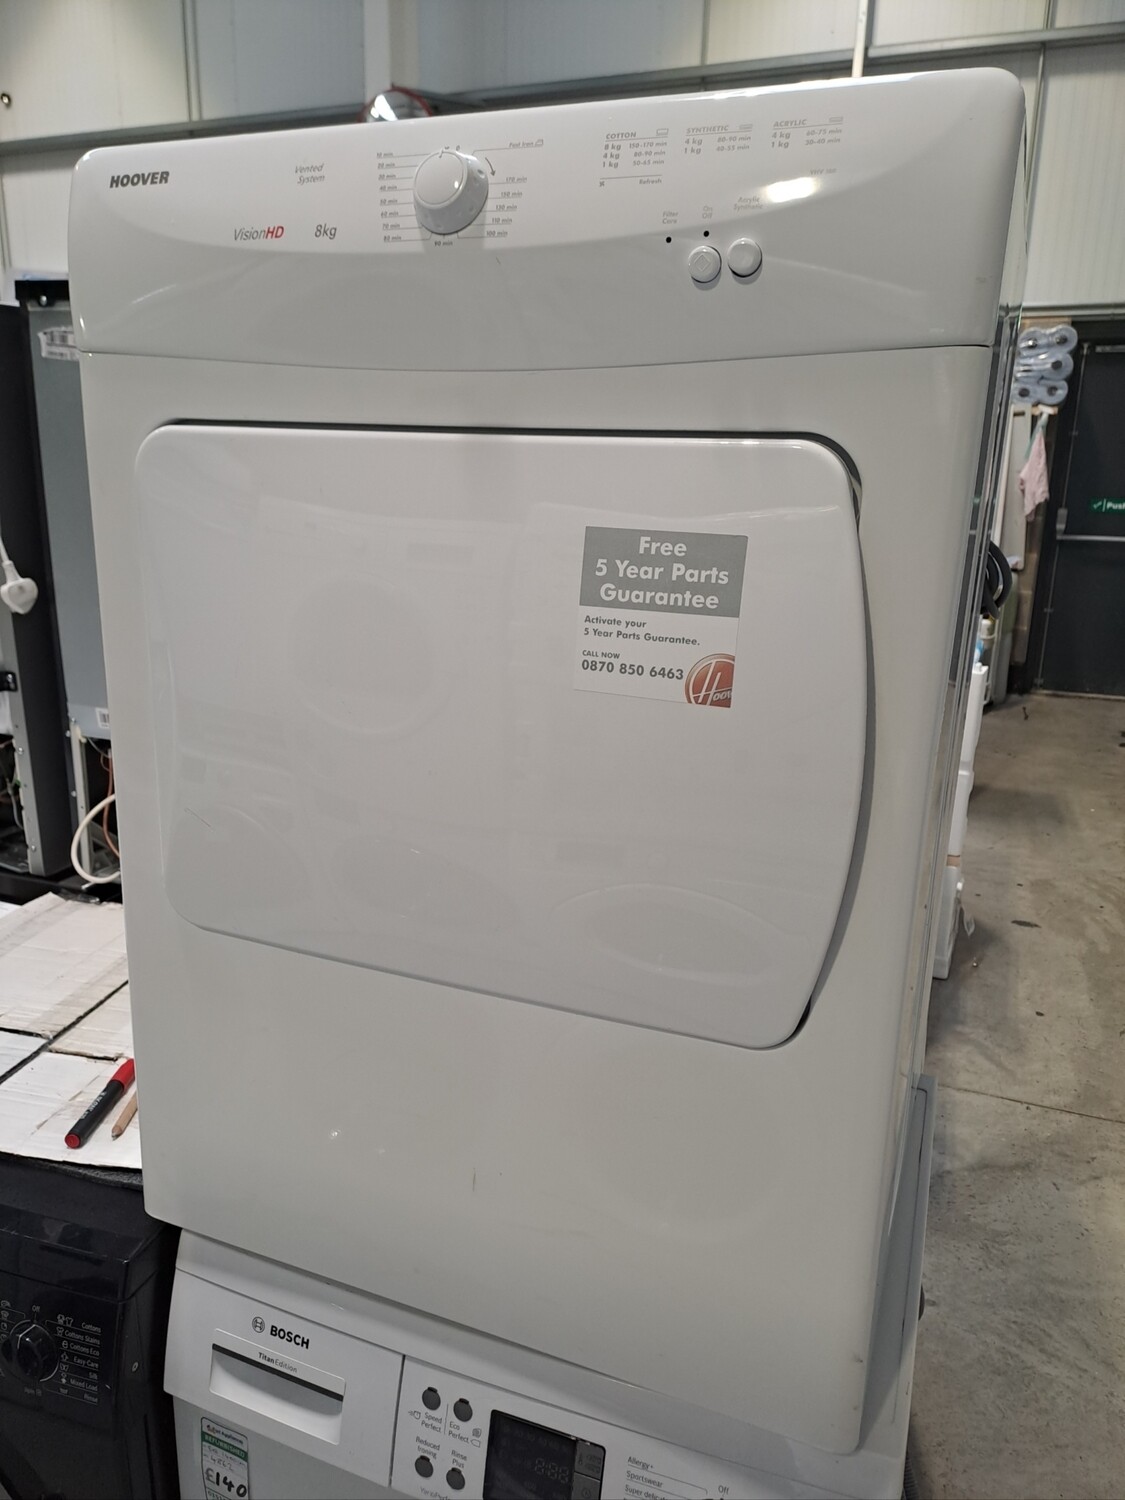 Hoover VHV180 8kg Vented Dryer Refurbished 6 Months Guarantee 